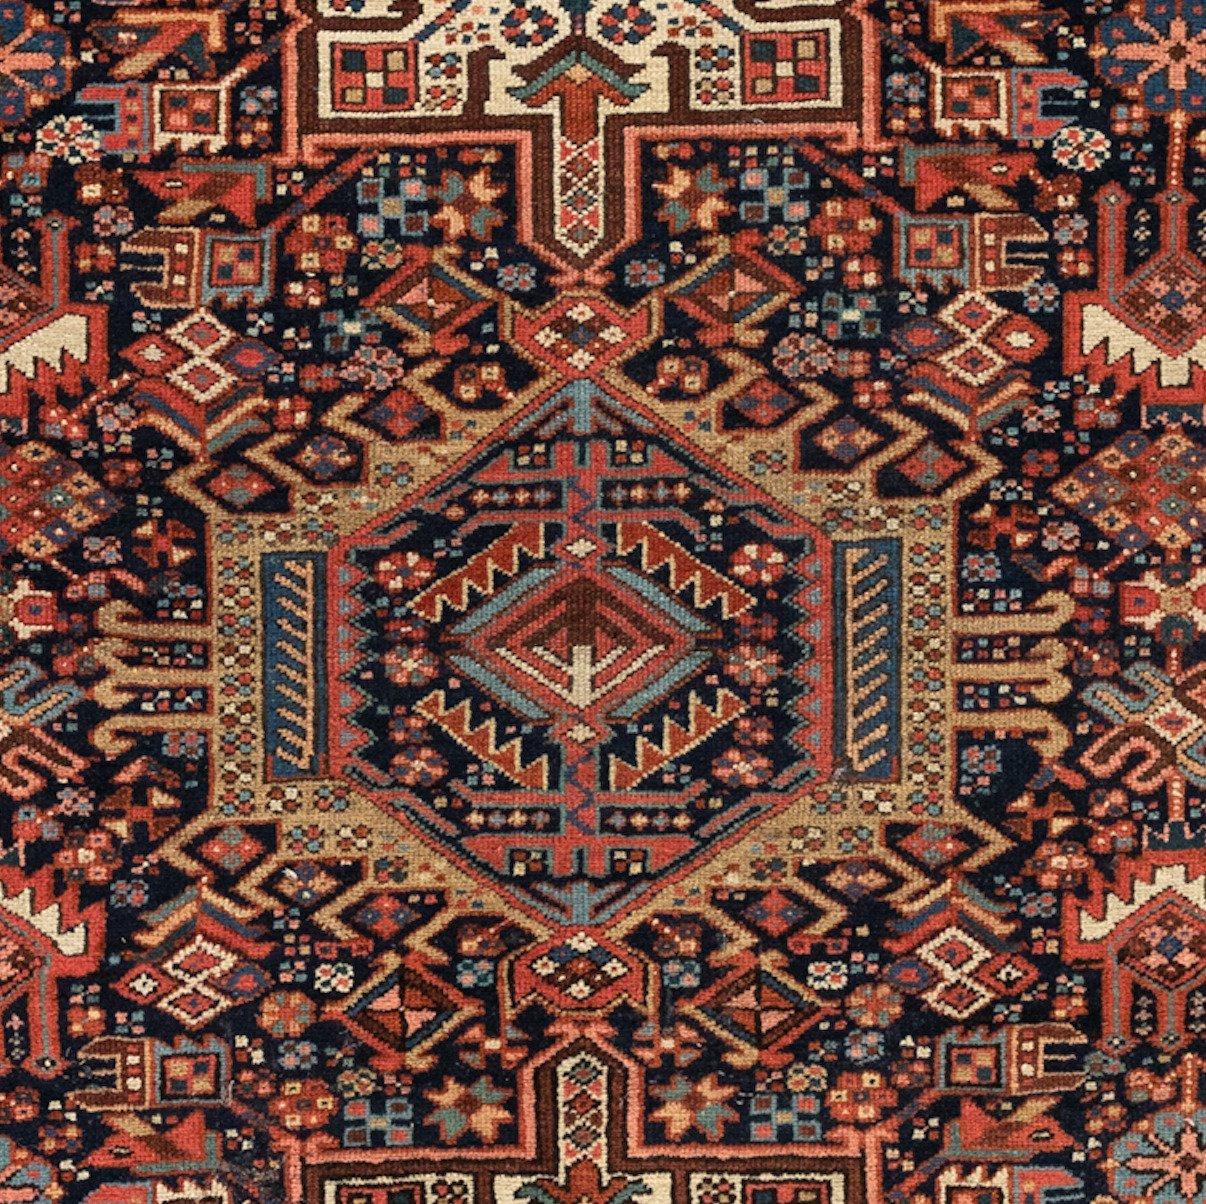 Antike Karaja-Teppiche (Schwarze Berge) werden im Iran nahe der kaukasischen Grenze gewebt und weisen daher kaukasische Stile und Motive auf. Dieser Teppich misst 4,9 x 6,4 Fuß und ist aus den 1940er Jahren.